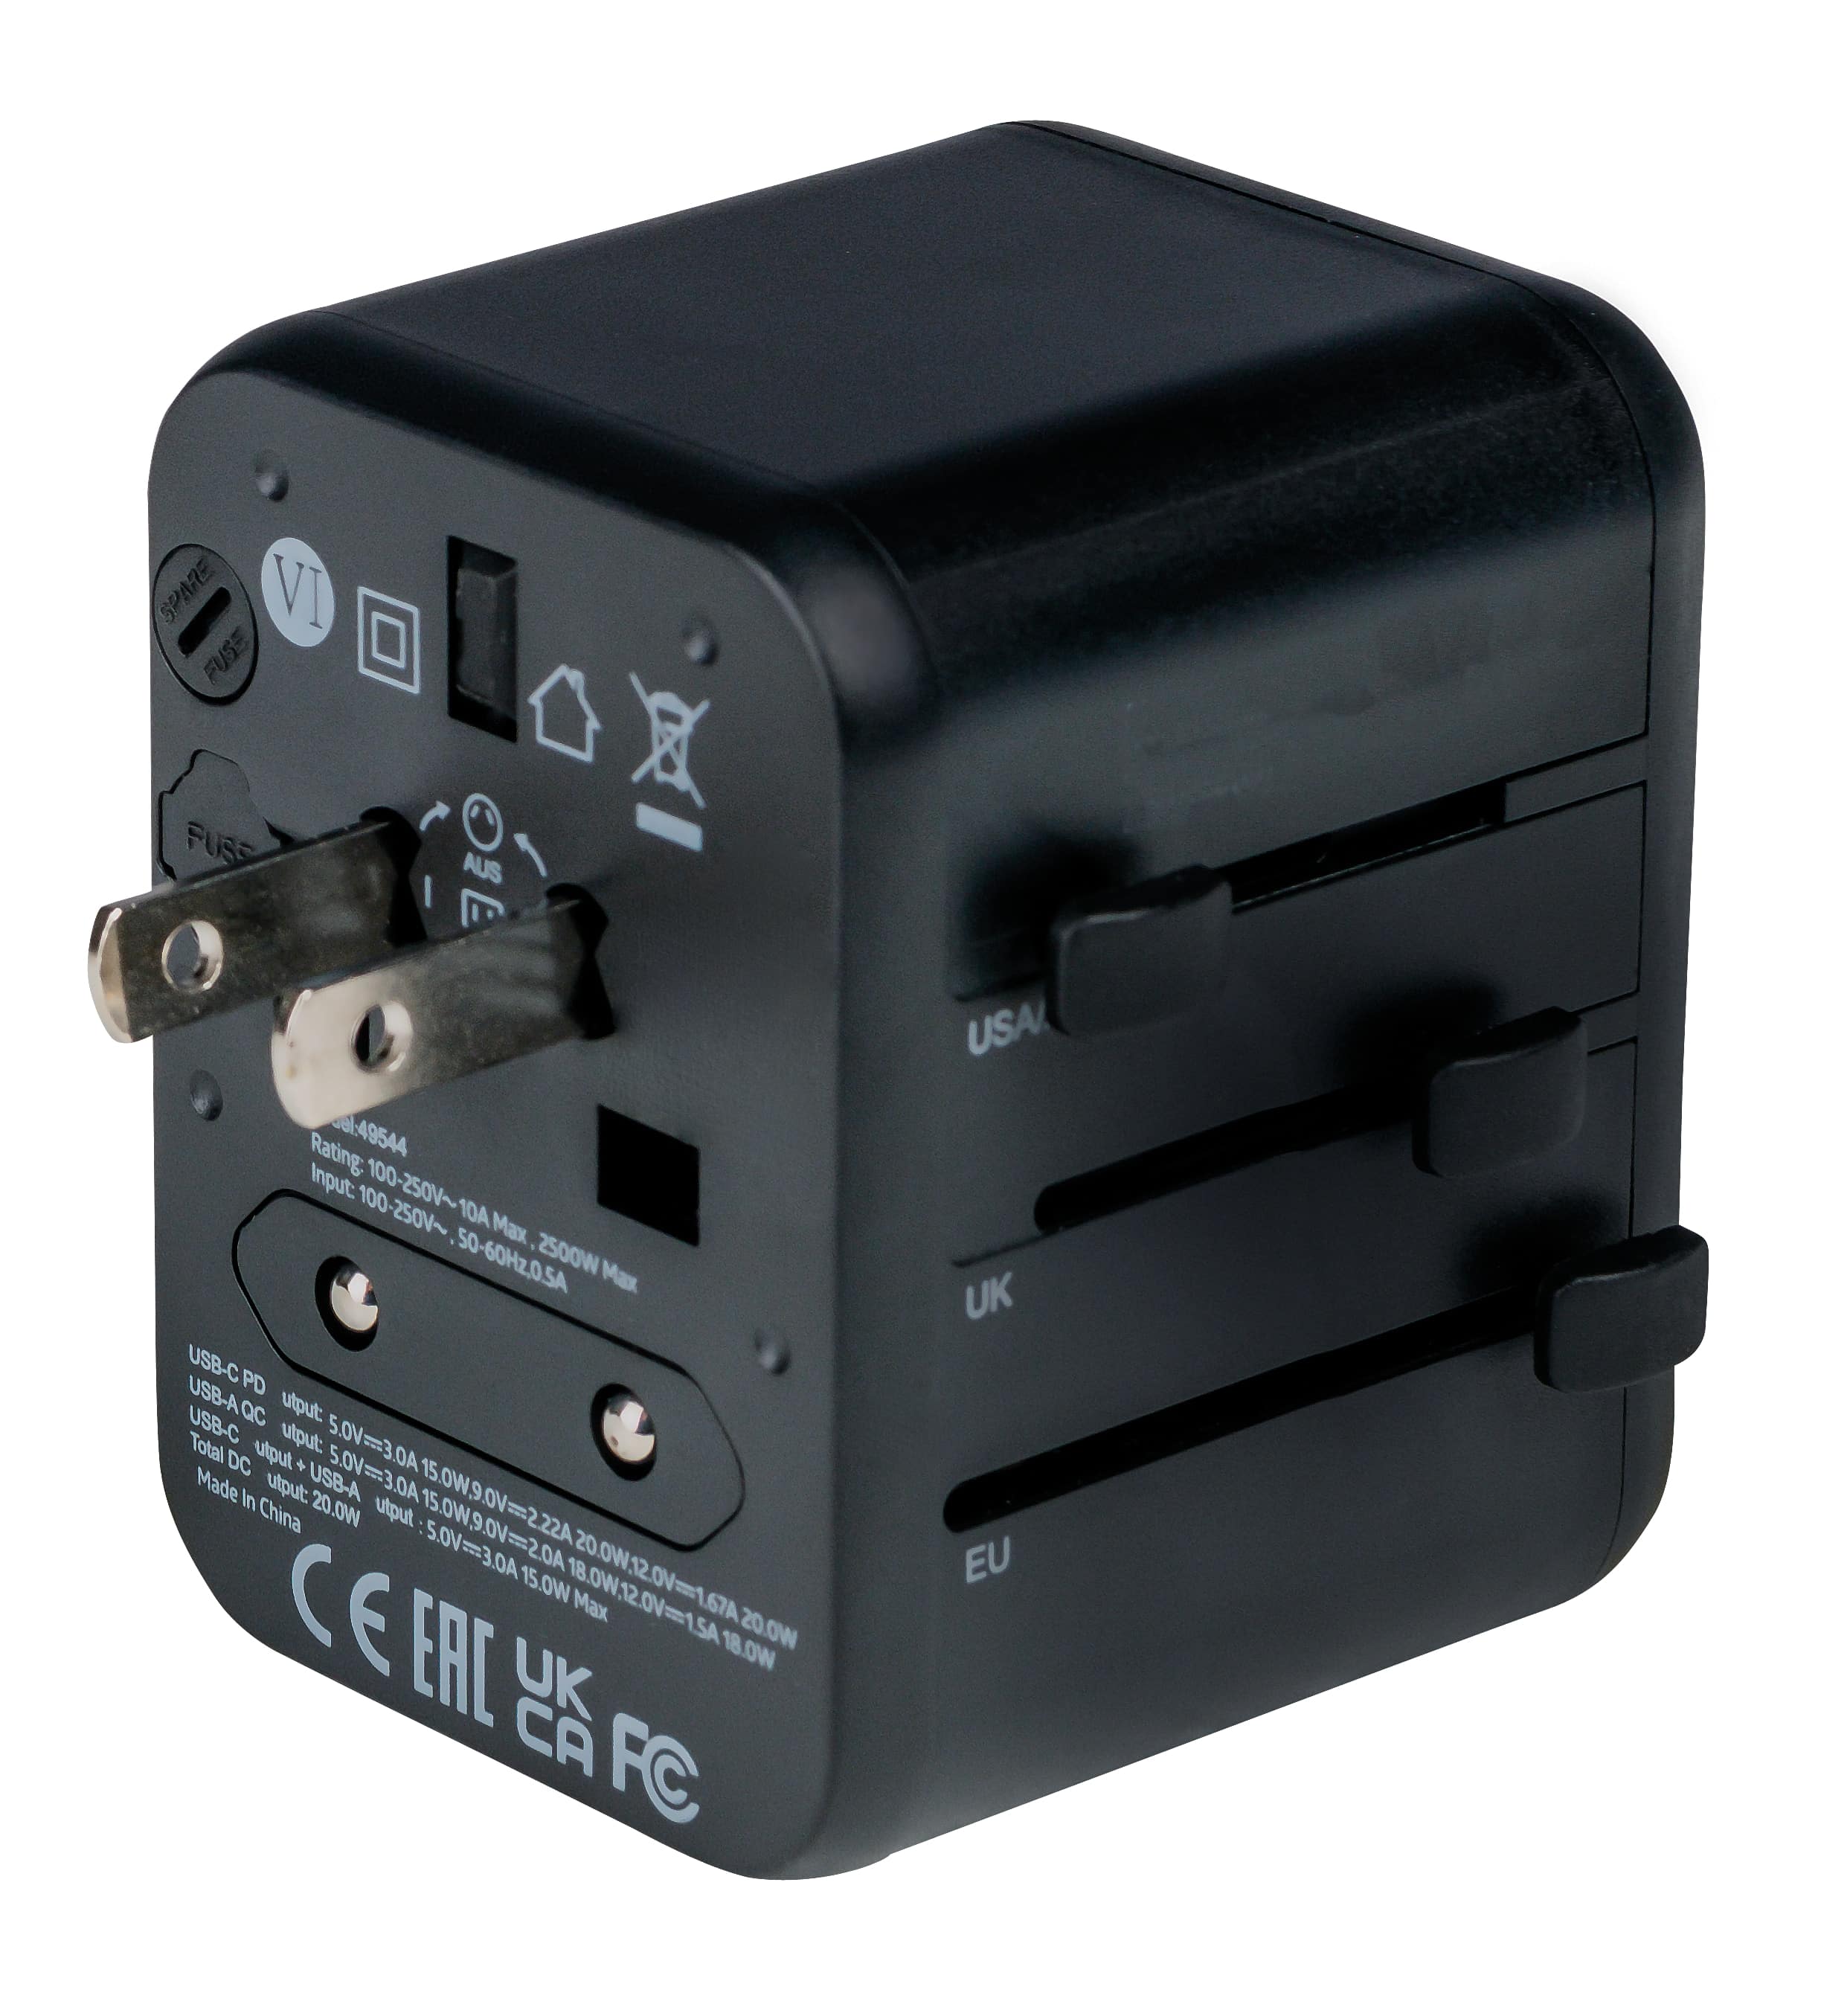 VERBATIM Universal-Reise-Adapter UTA-02, 1x Stromstecker, 1x USB-A QC, 1x USB-C